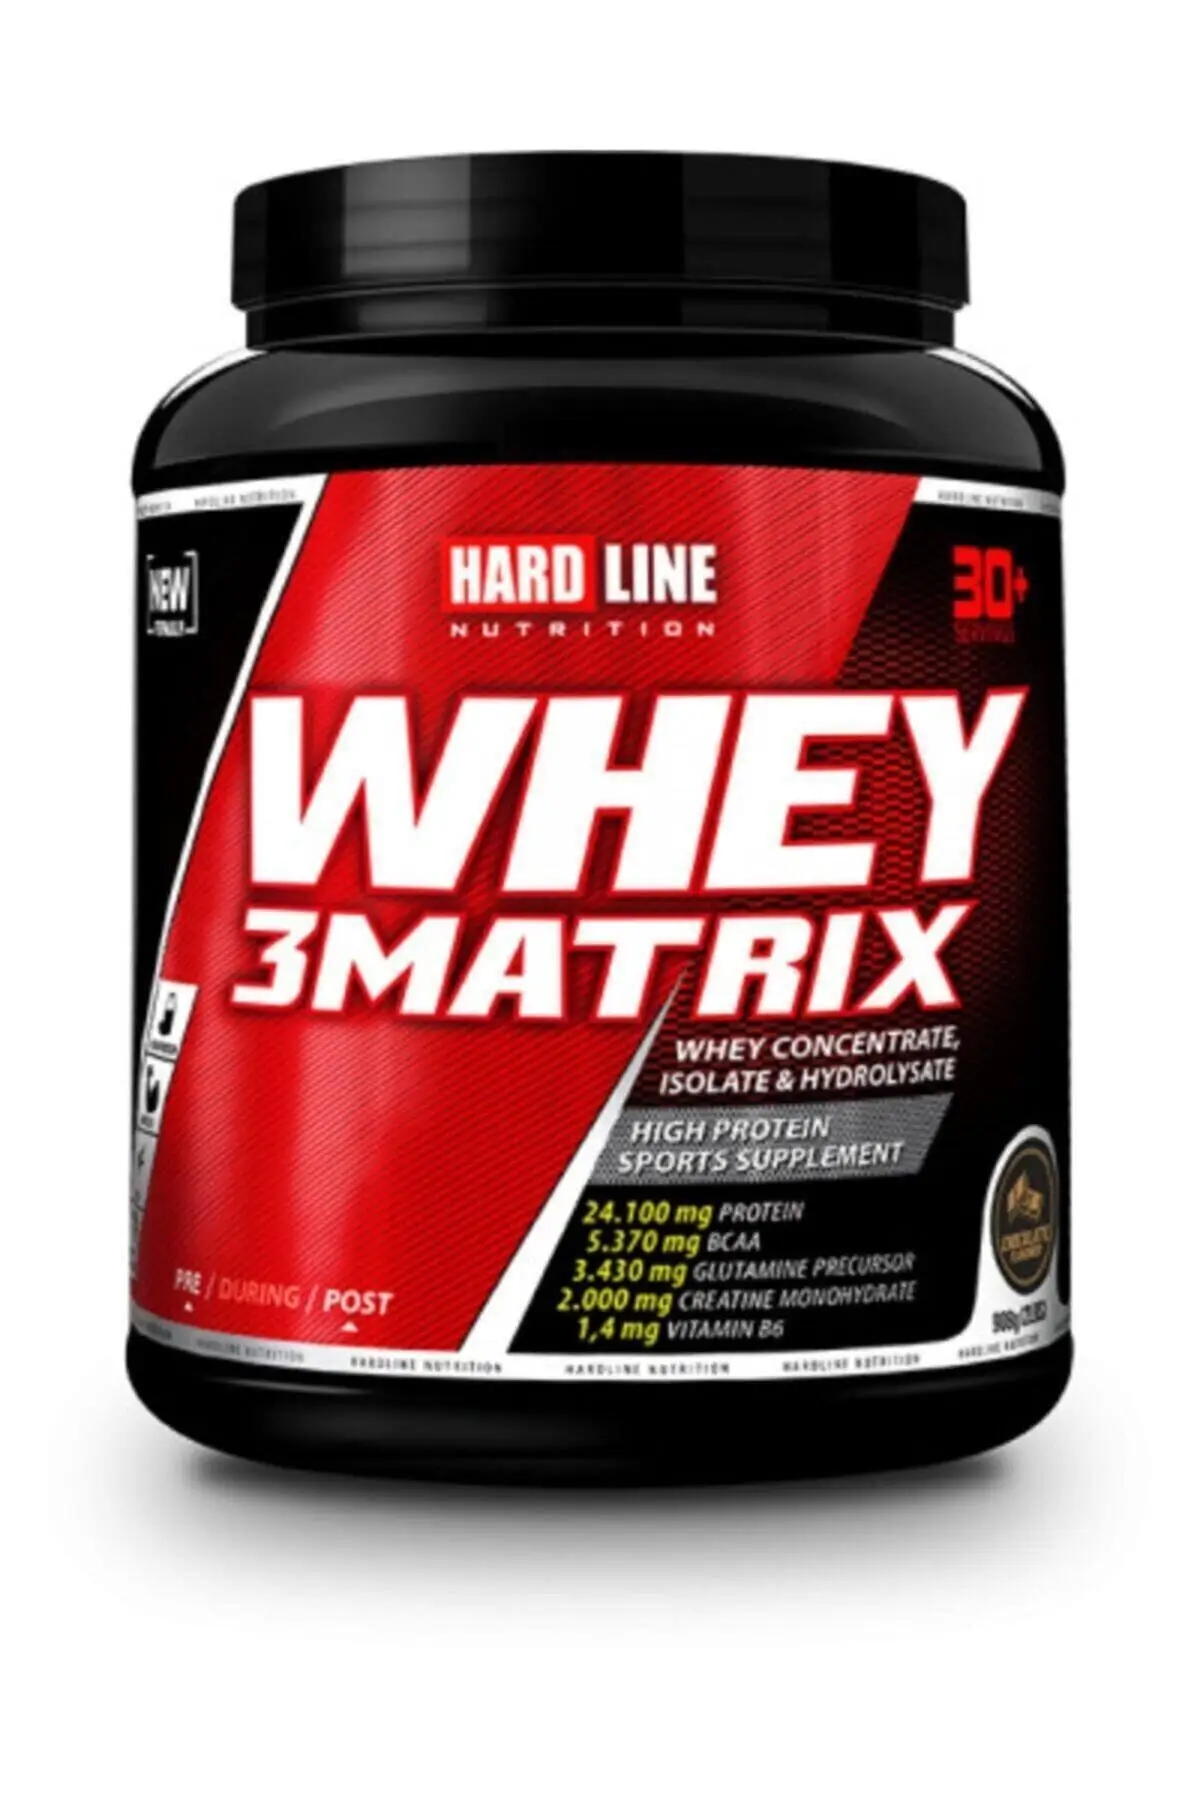 

Hardline Whey 3matrix 908G-Chocolate Flavored Protein Powder